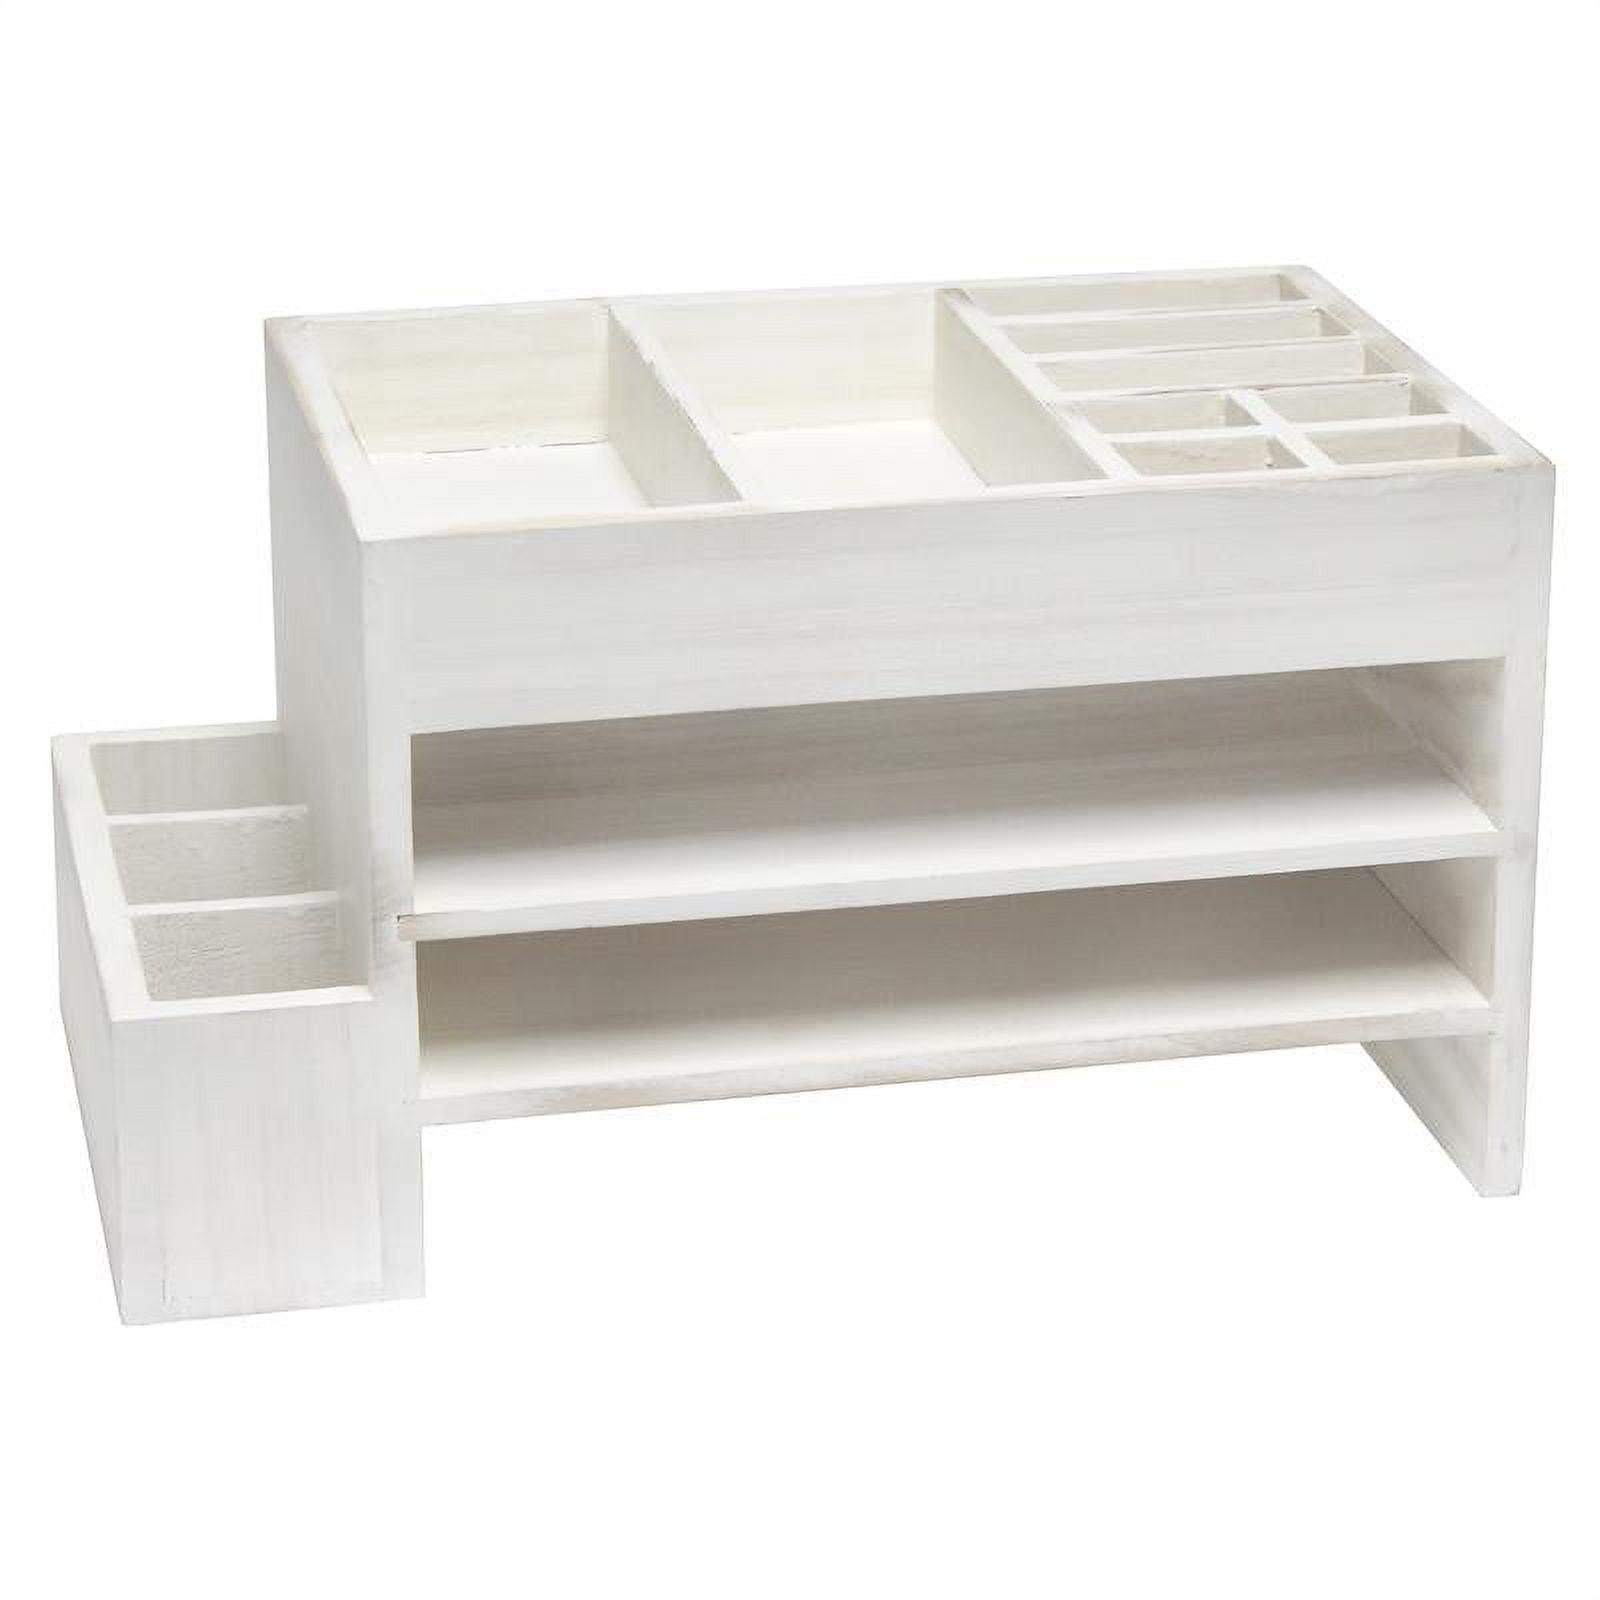 White Wash Wooden Tiered Desk Organizer with Storage Cubbies